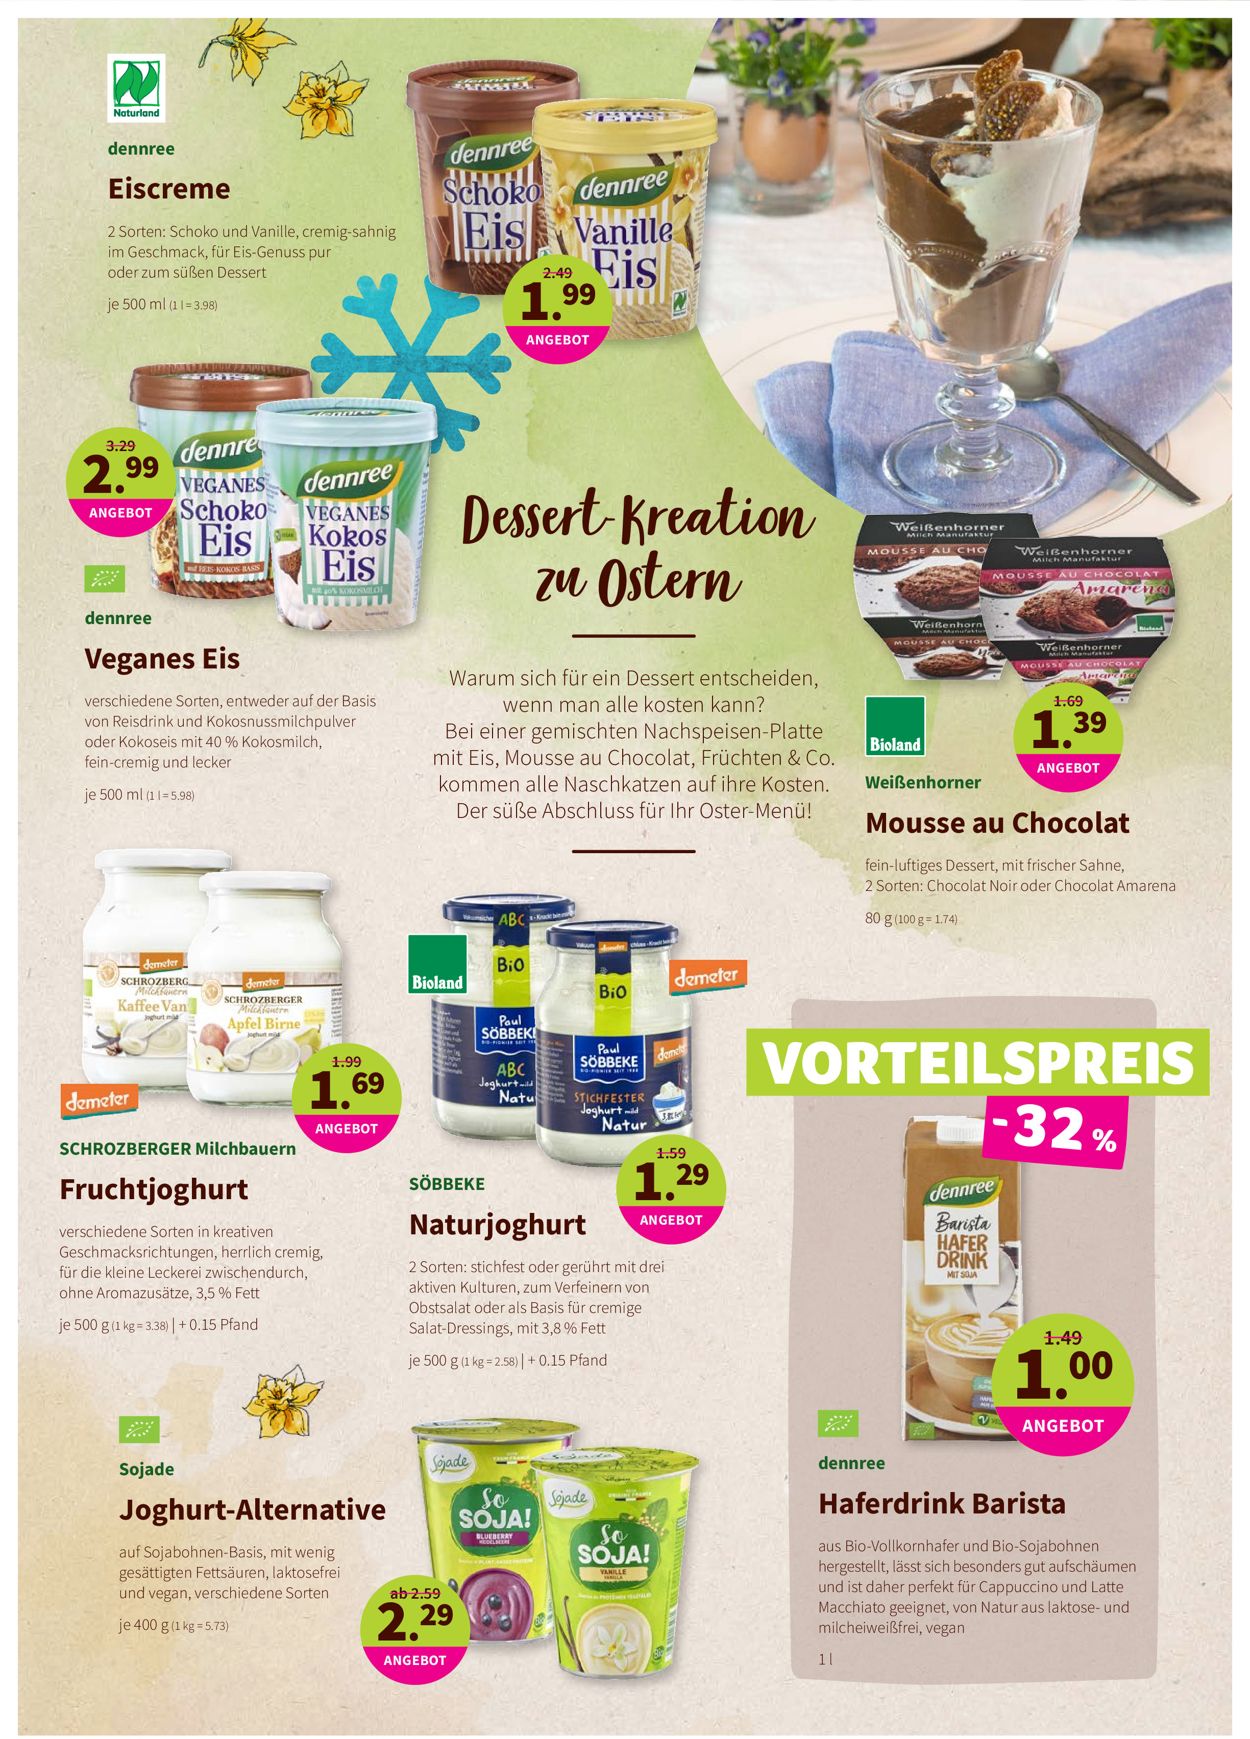 Prospekt Denn's Biomarkt Ostern 2021 vom 29.03.2021